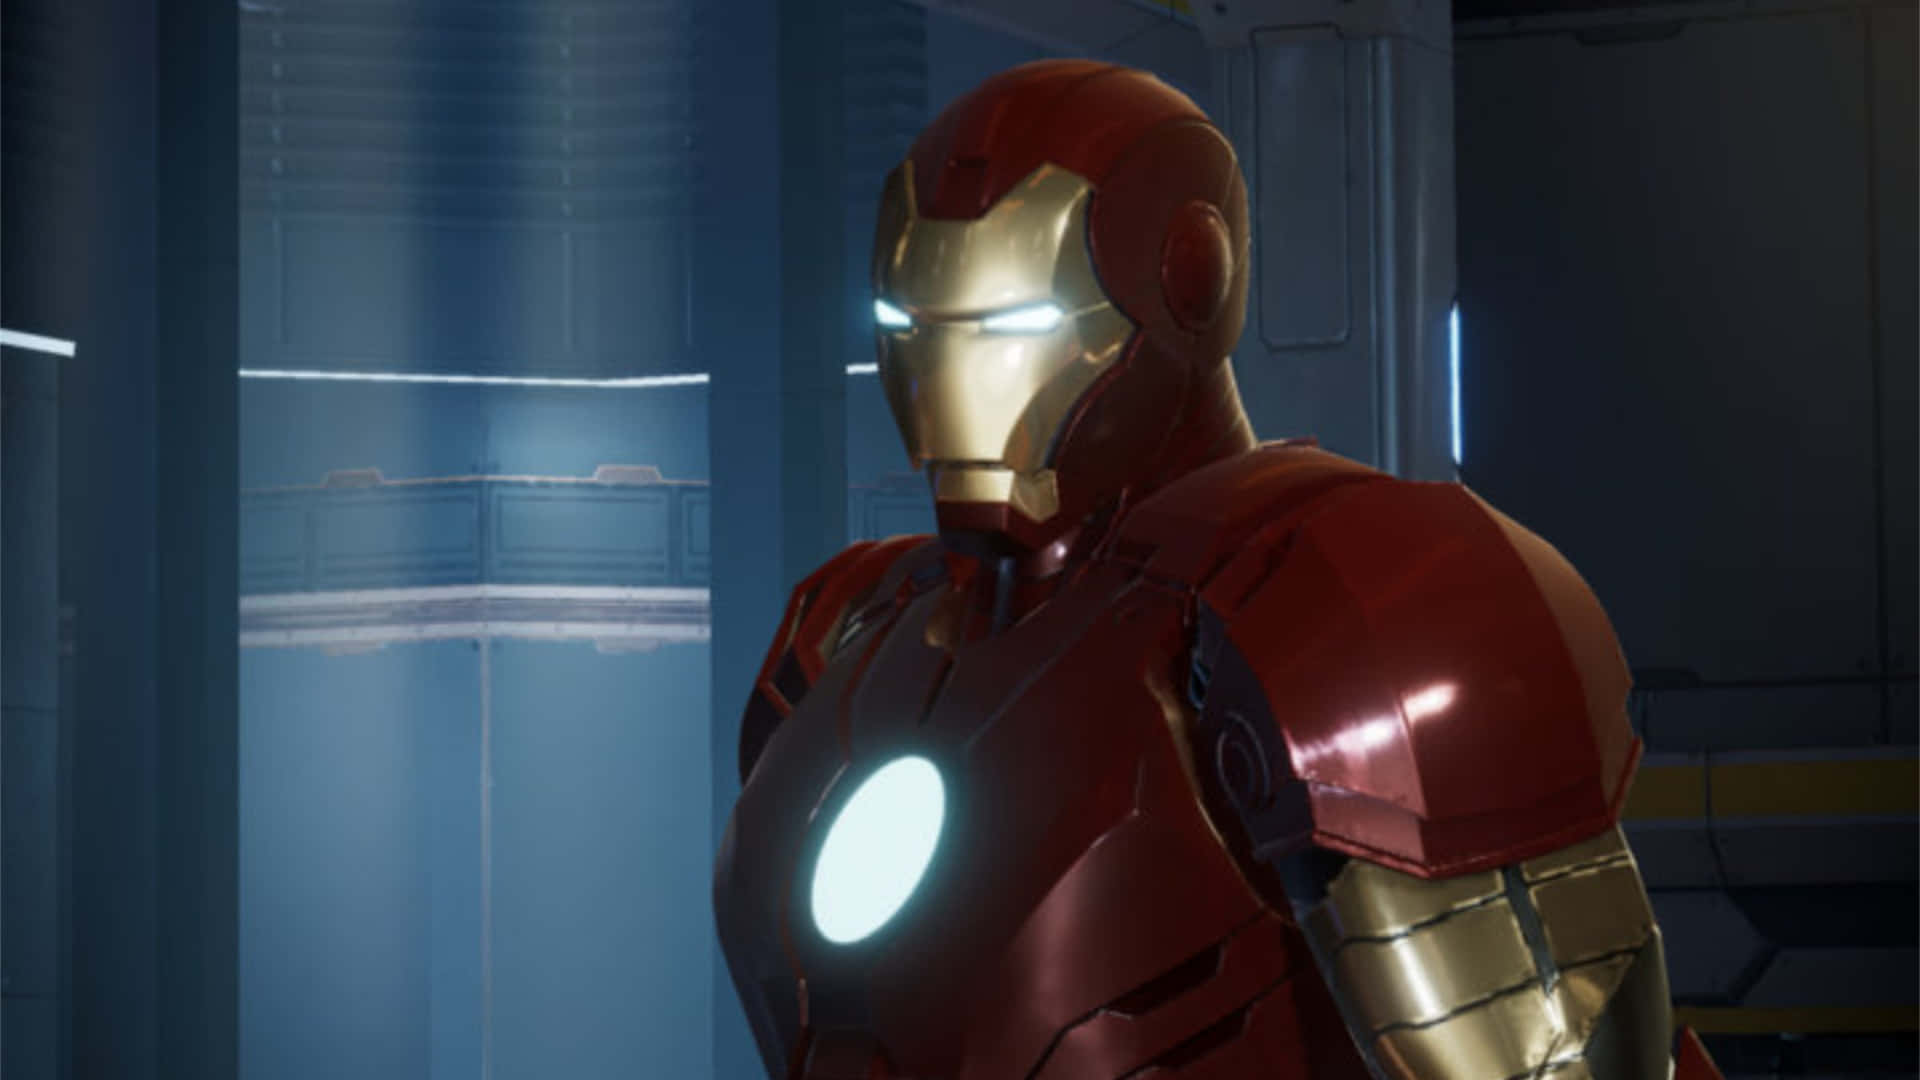 Imagende Iron Man En El Laboratorio.